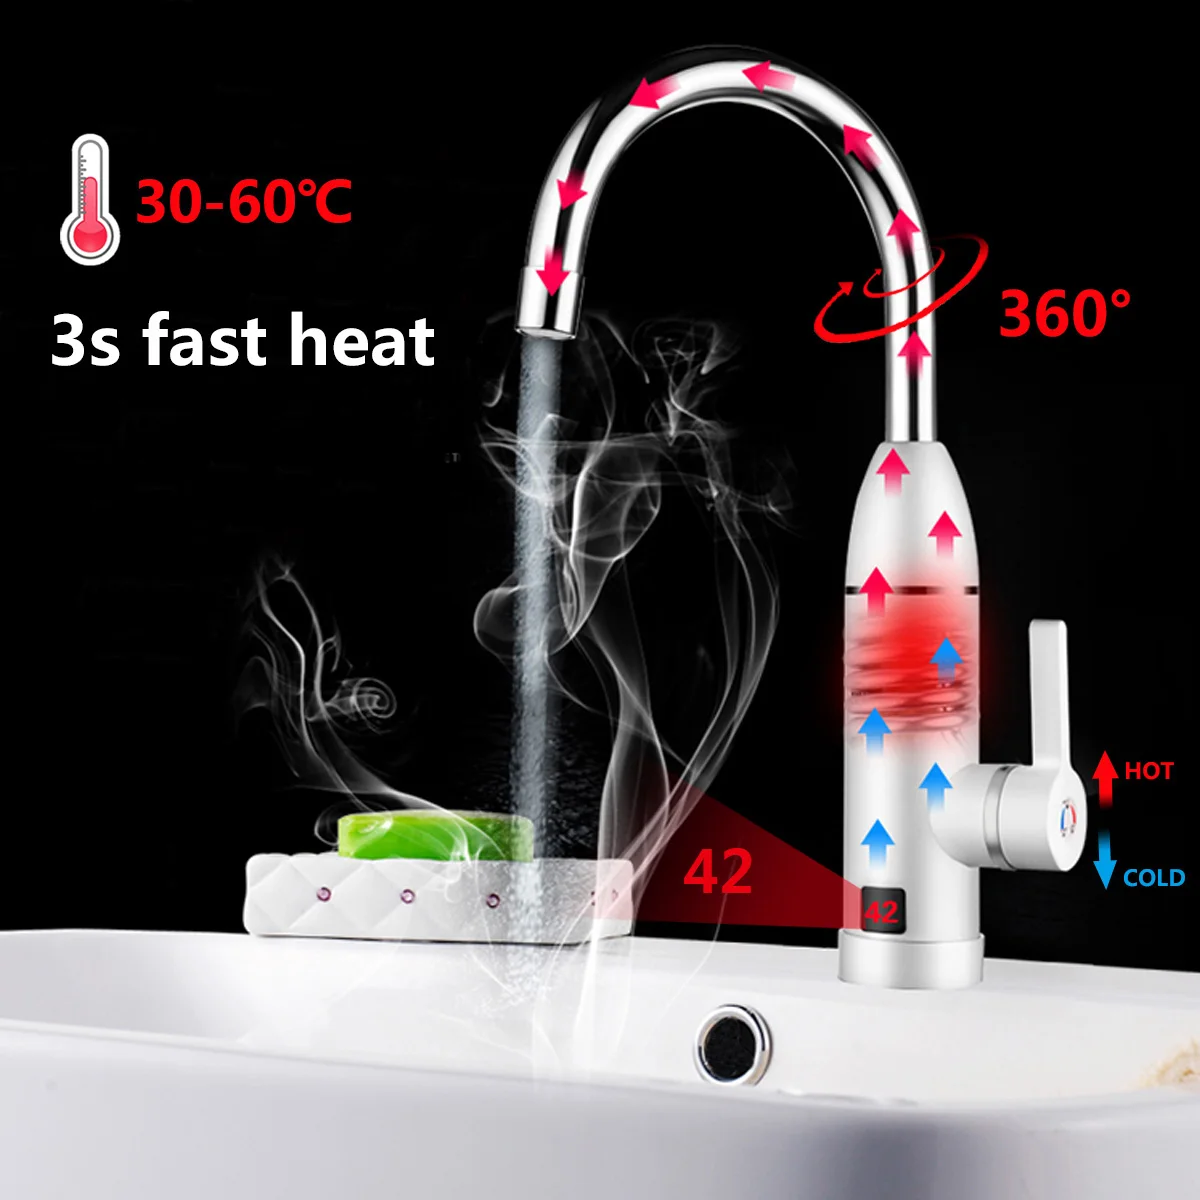 220 В в 3кВт мгновенный нагрев кран нагреватель горячий холодный двойной-использование Tankless вода быстро кран с нагревом душ со светодио дный